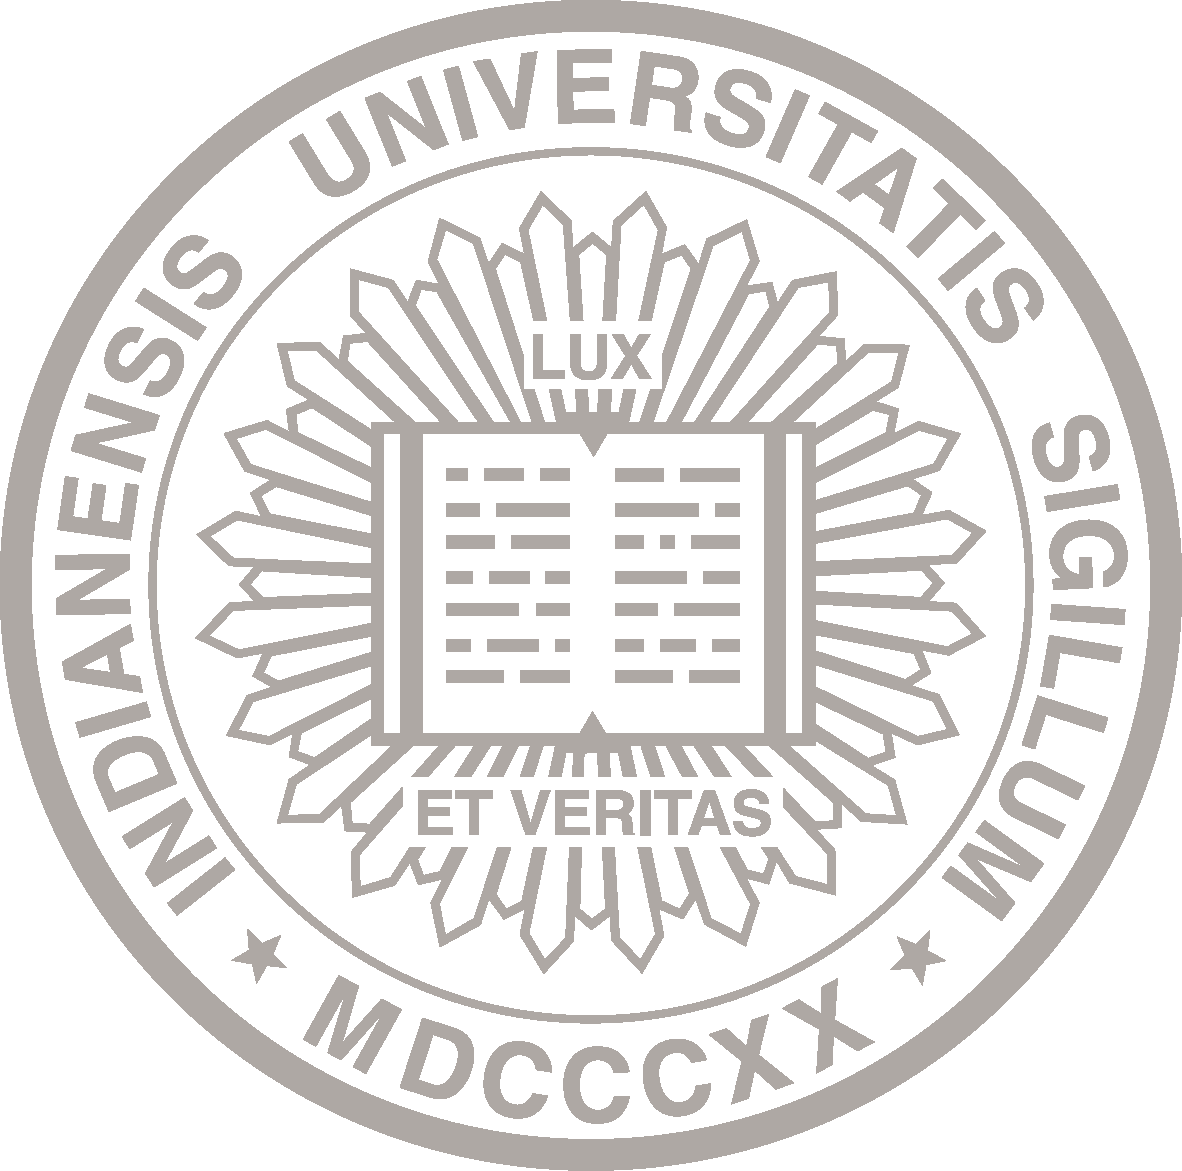 The IU Seal: Indianensis Universitatis Sigillum MDCCCXX